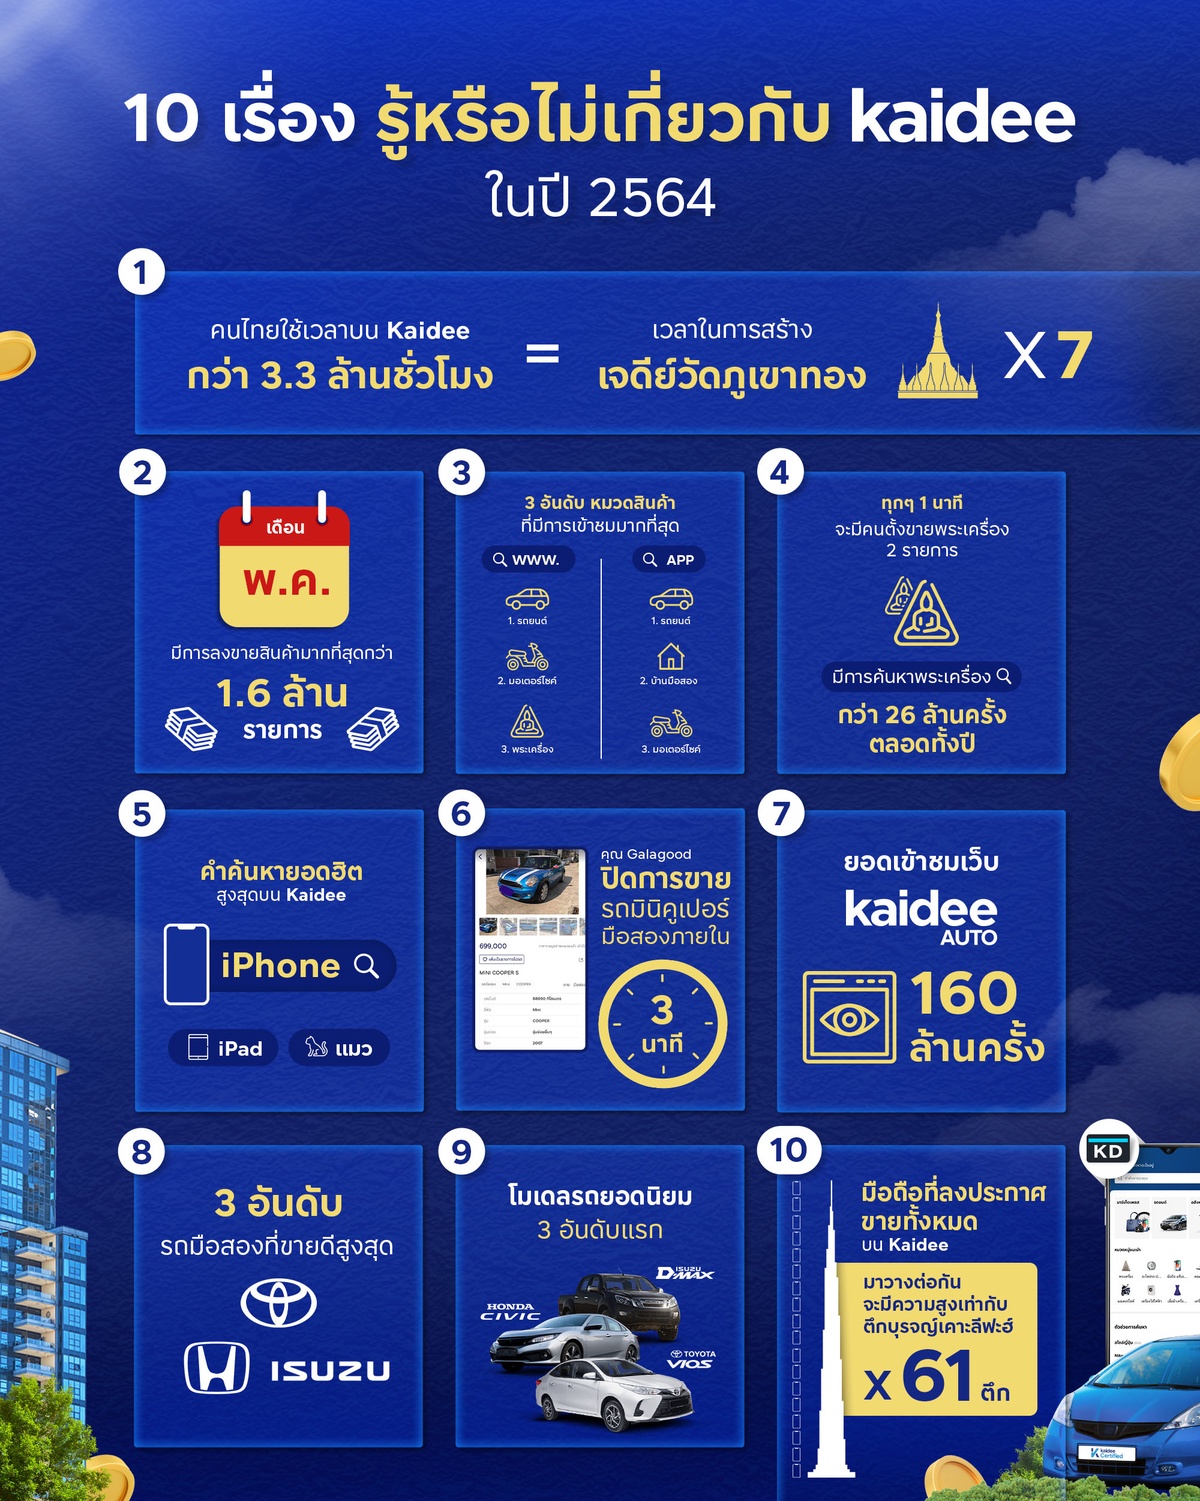 10 เรื่องรู้หรือไม่เกี่ยวกับ Kaidee แพลตฟอร์มตลาดนัดออนไลน์ที่ฟรีค่าใช้จ่ายจริงเพื่อคนไทย